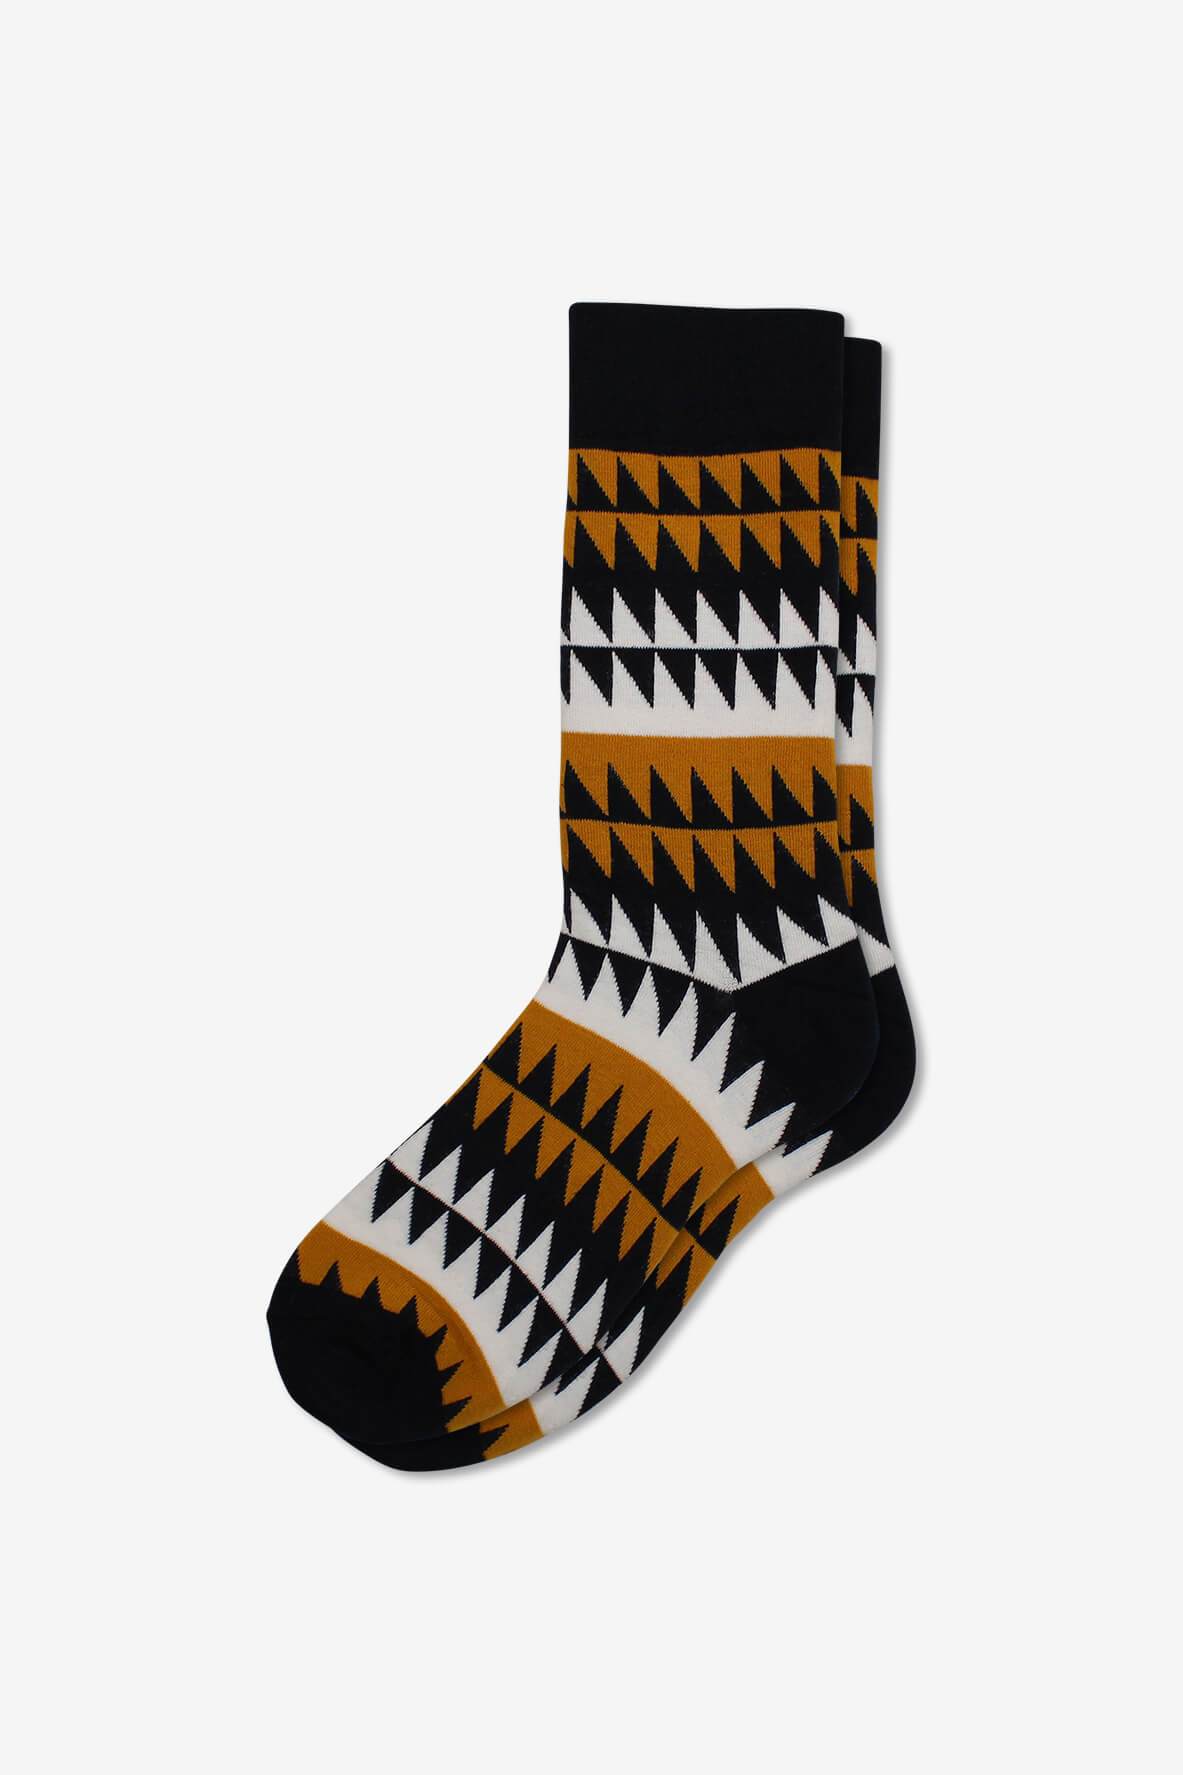 Socks IMG_5227, socks, GoTie